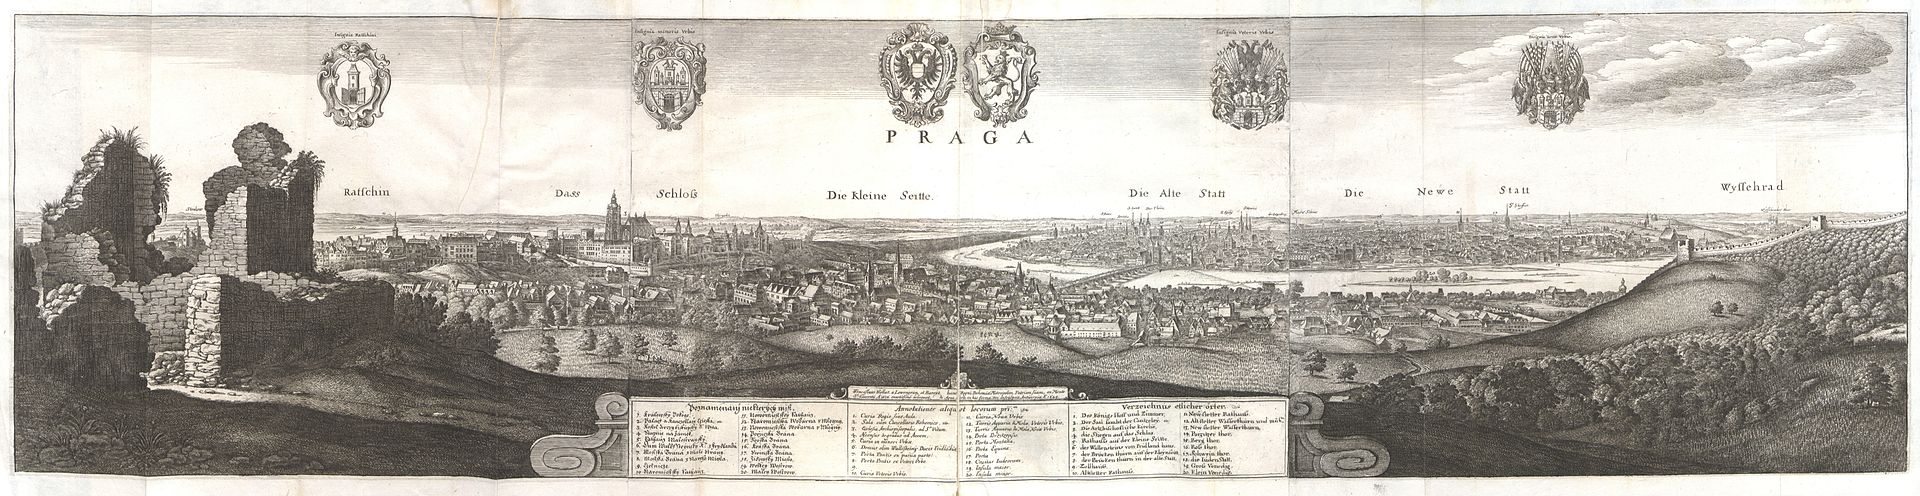 Václav Hollar - Pohled na Prahu z Petřína, 1649 podle kreseb z roku 1636